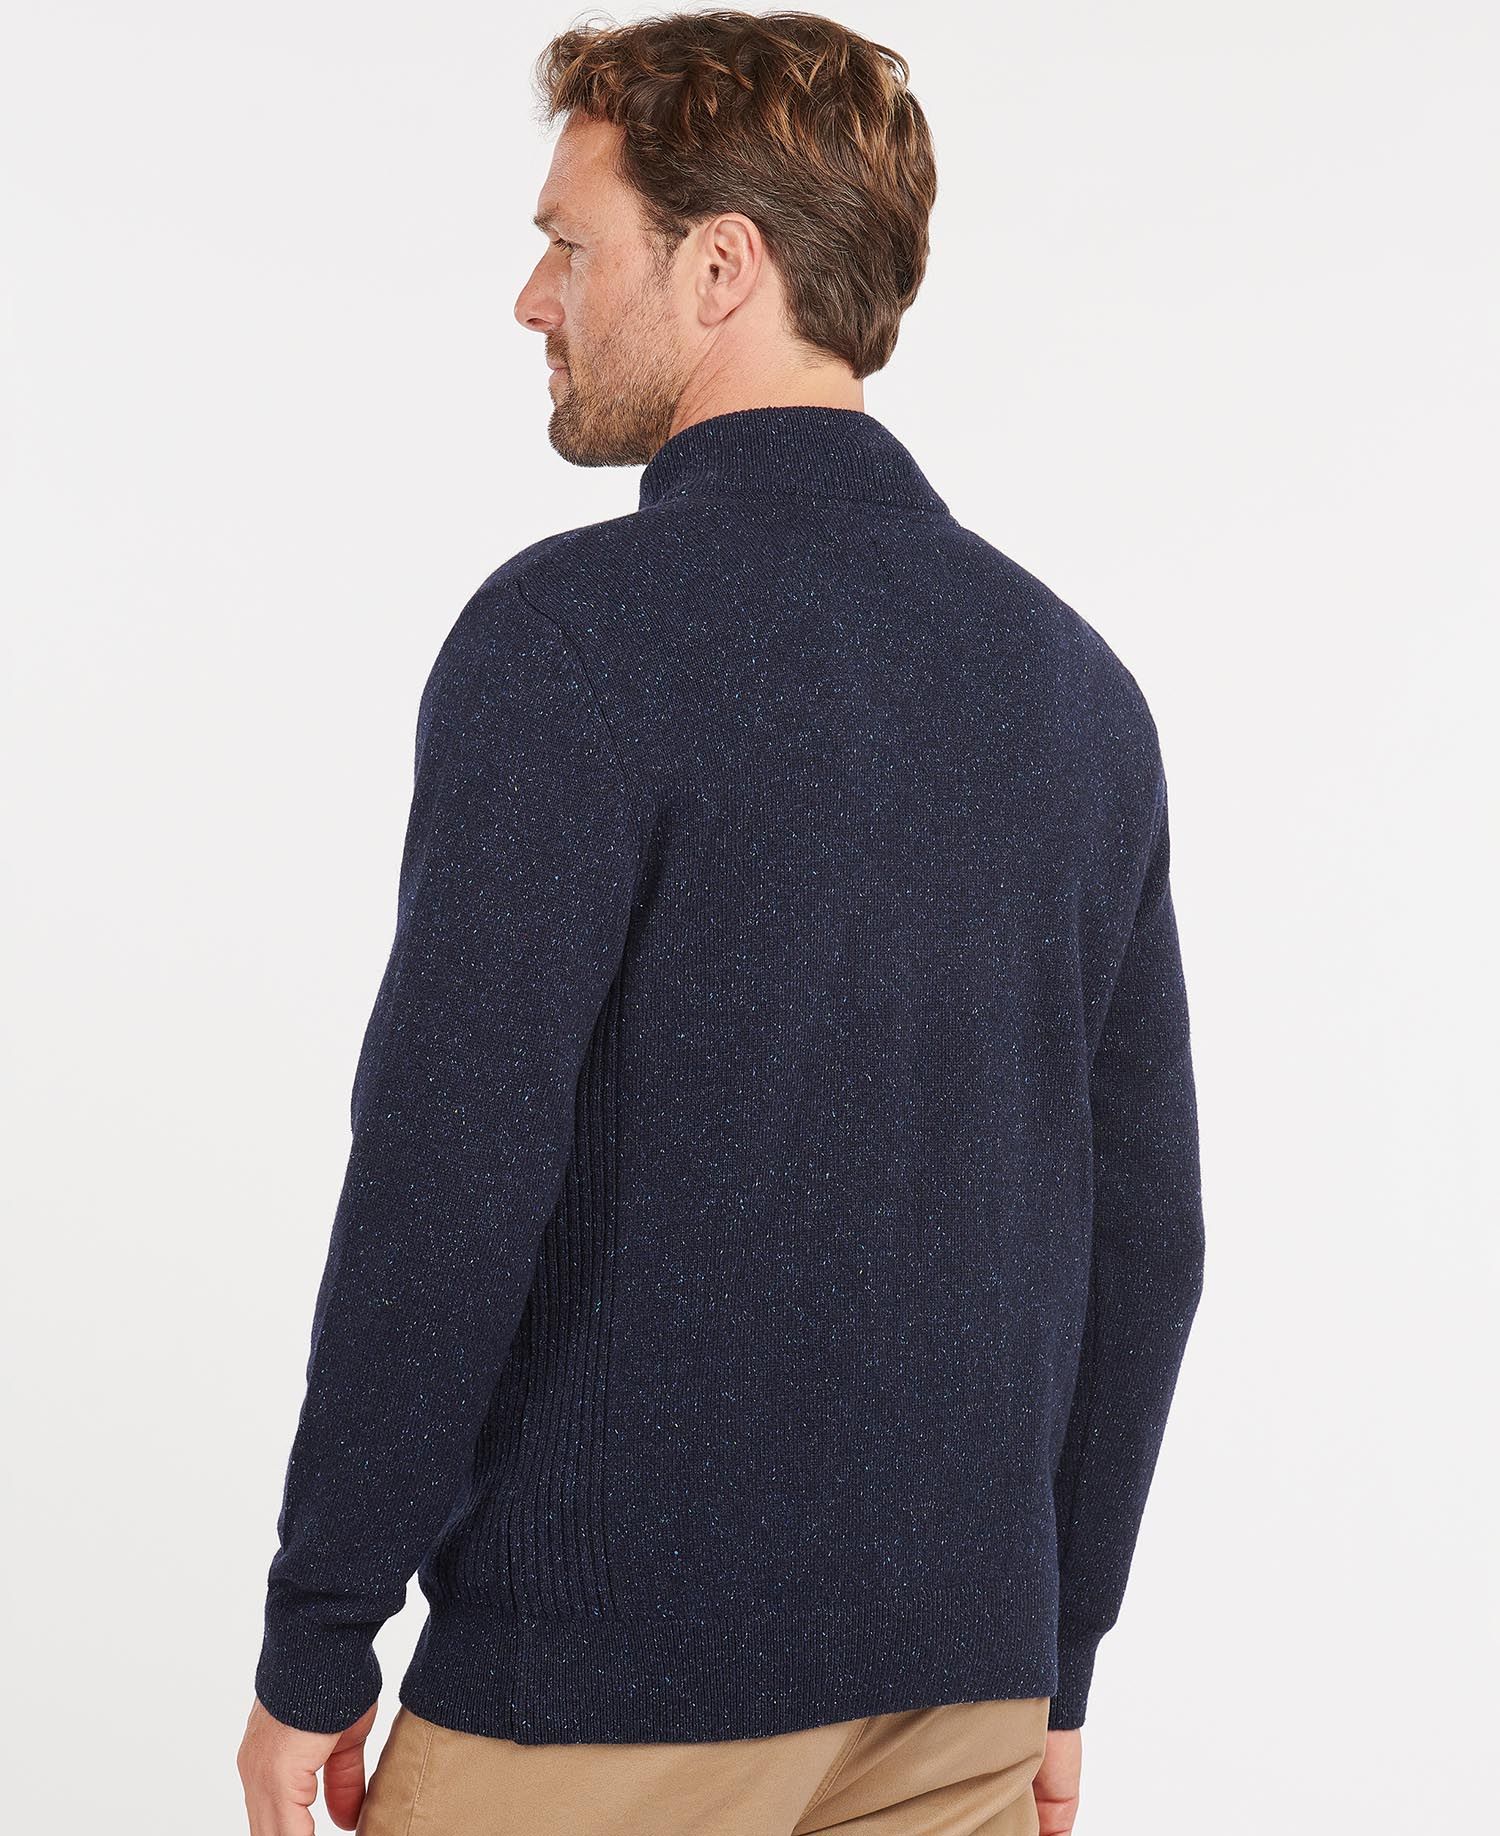 Men's Tisbury Half Zip Sweater - Navy